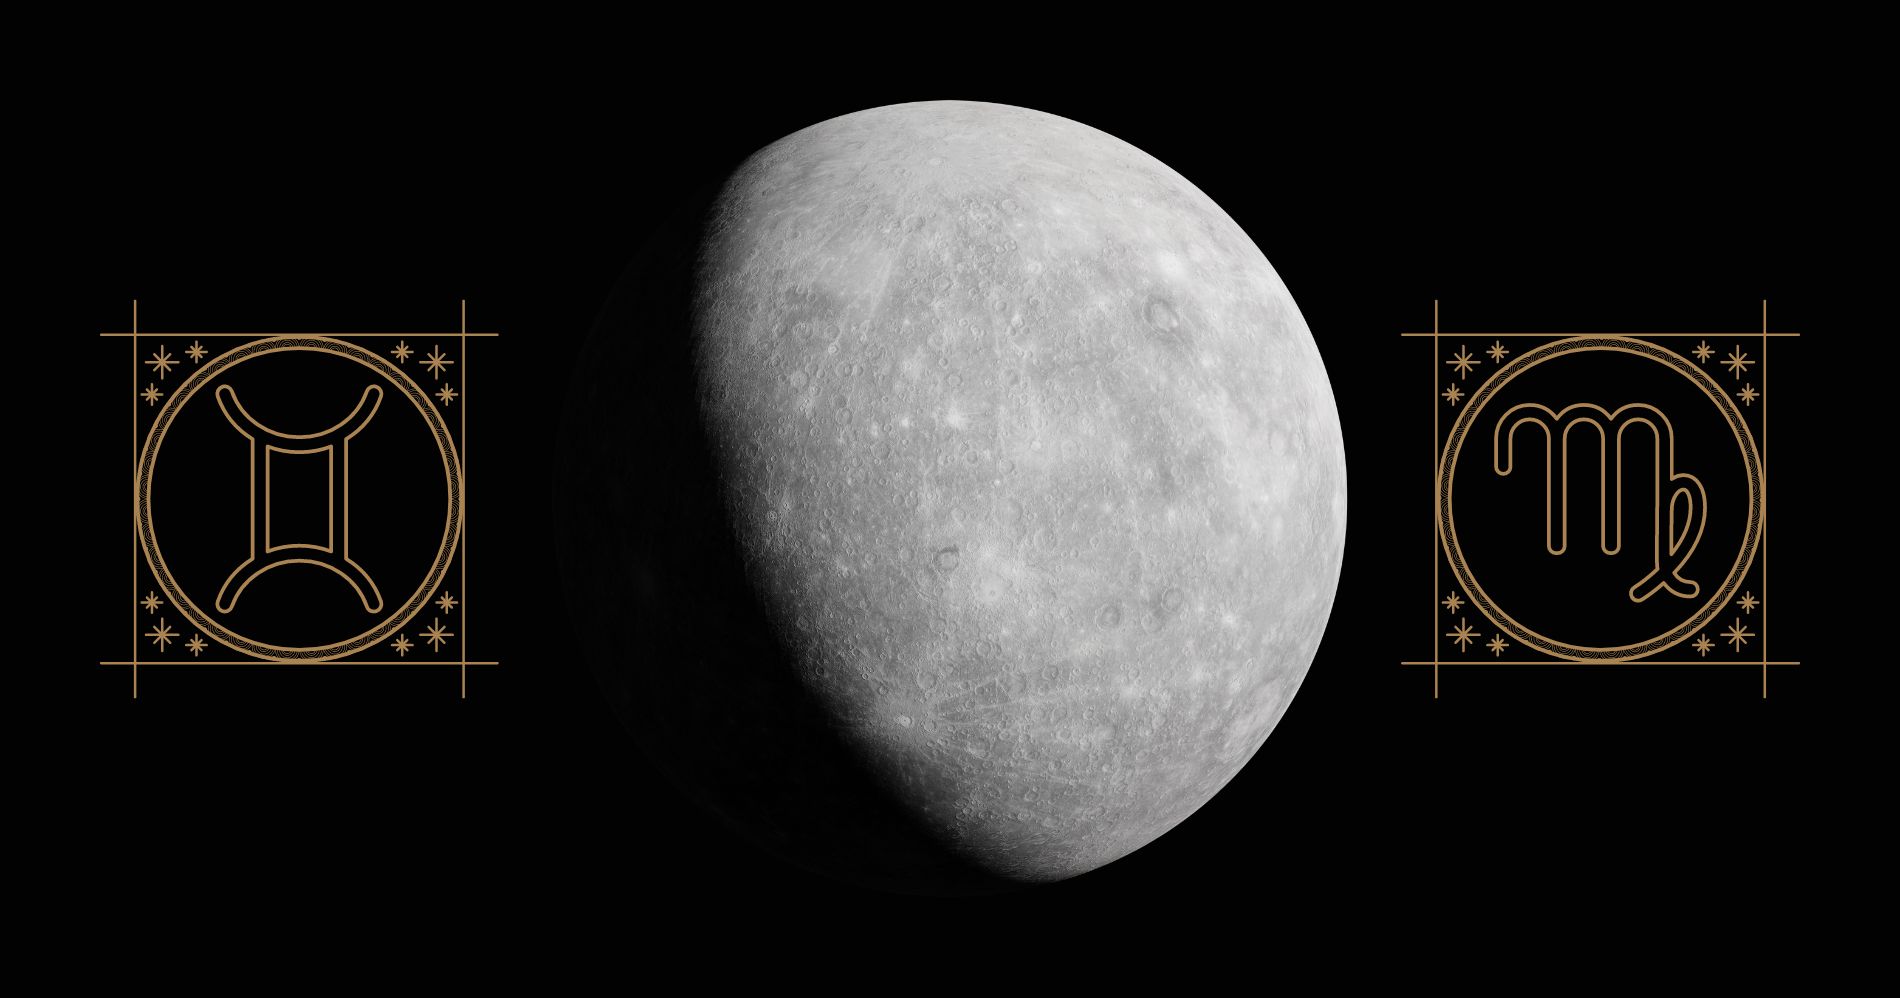 Planet Merkurius - Gemini dan Virgo Ilustrasi Bisnis Muda - Image: Canva